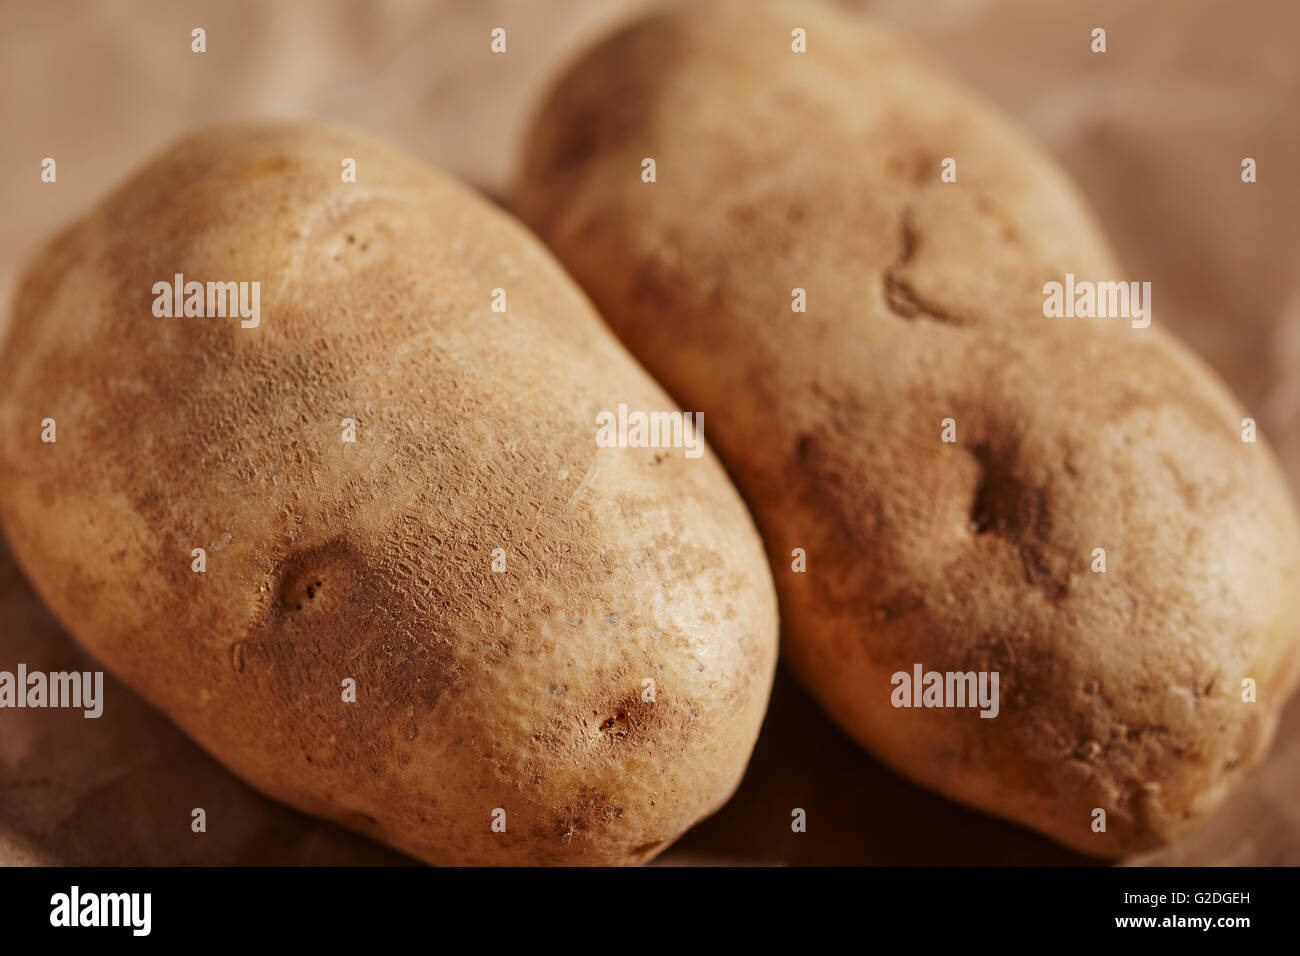 Deux pommes de terre russet Banque D'Images